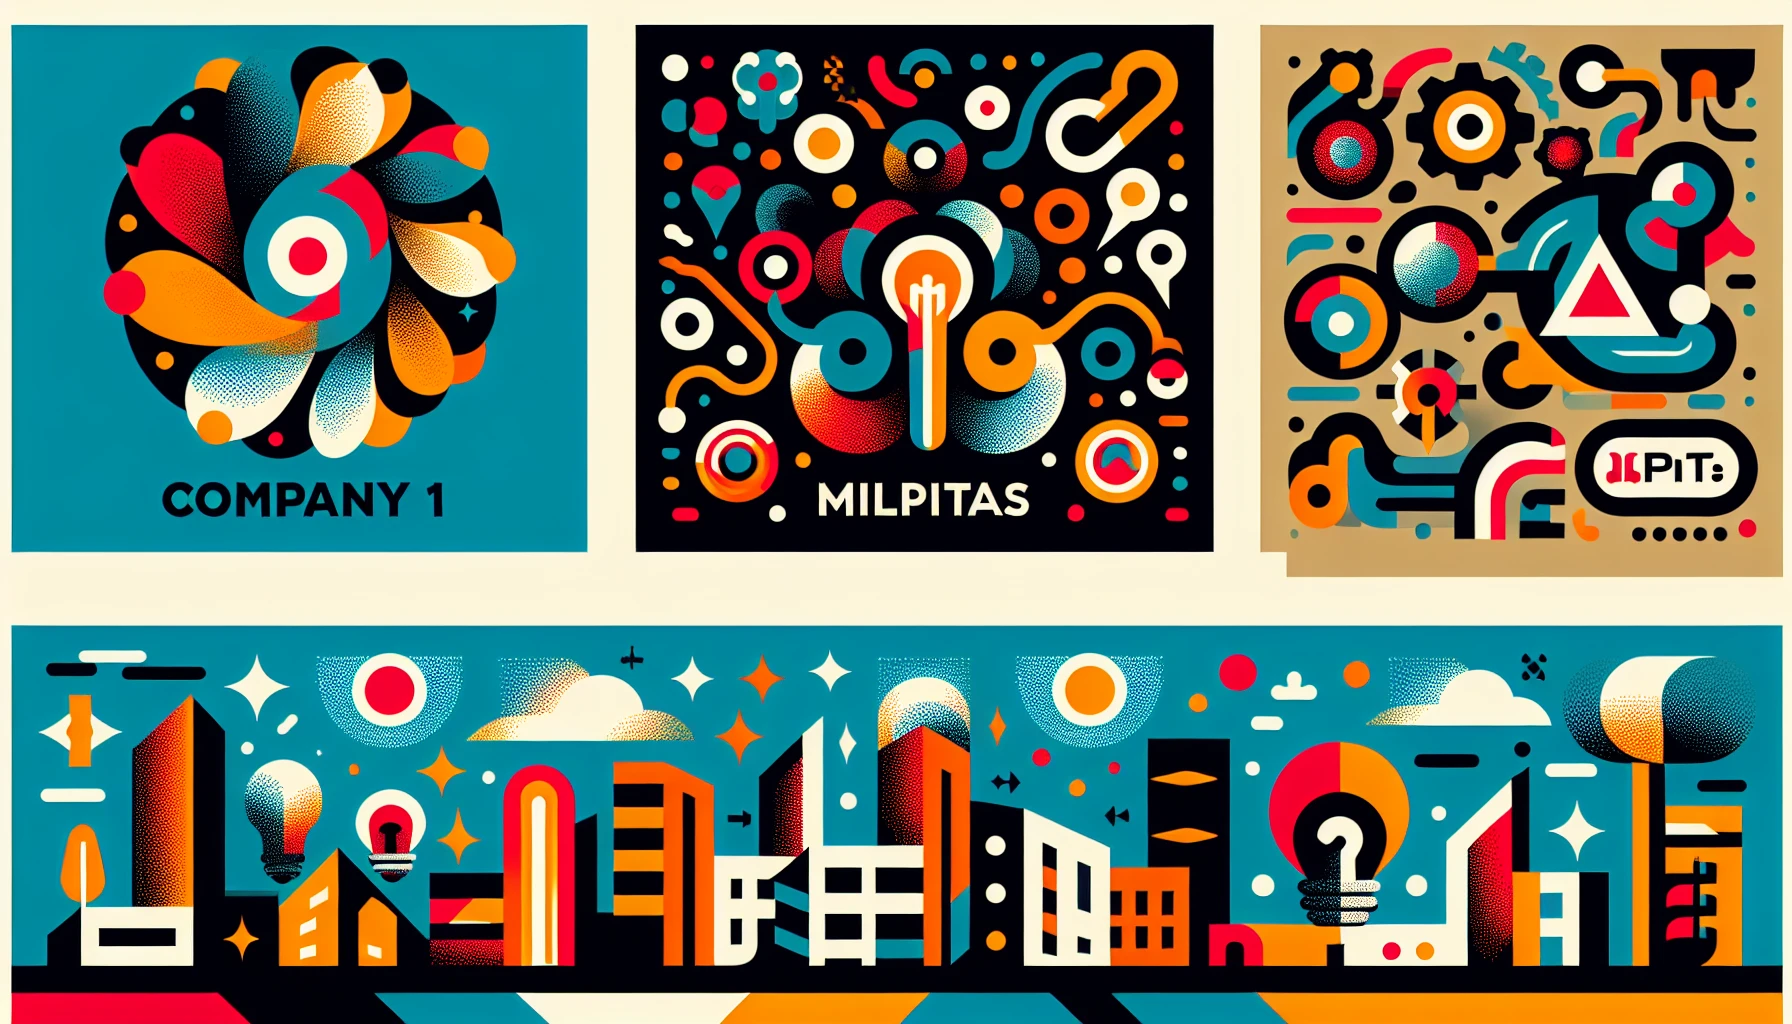 Local Milpitas companies' logos